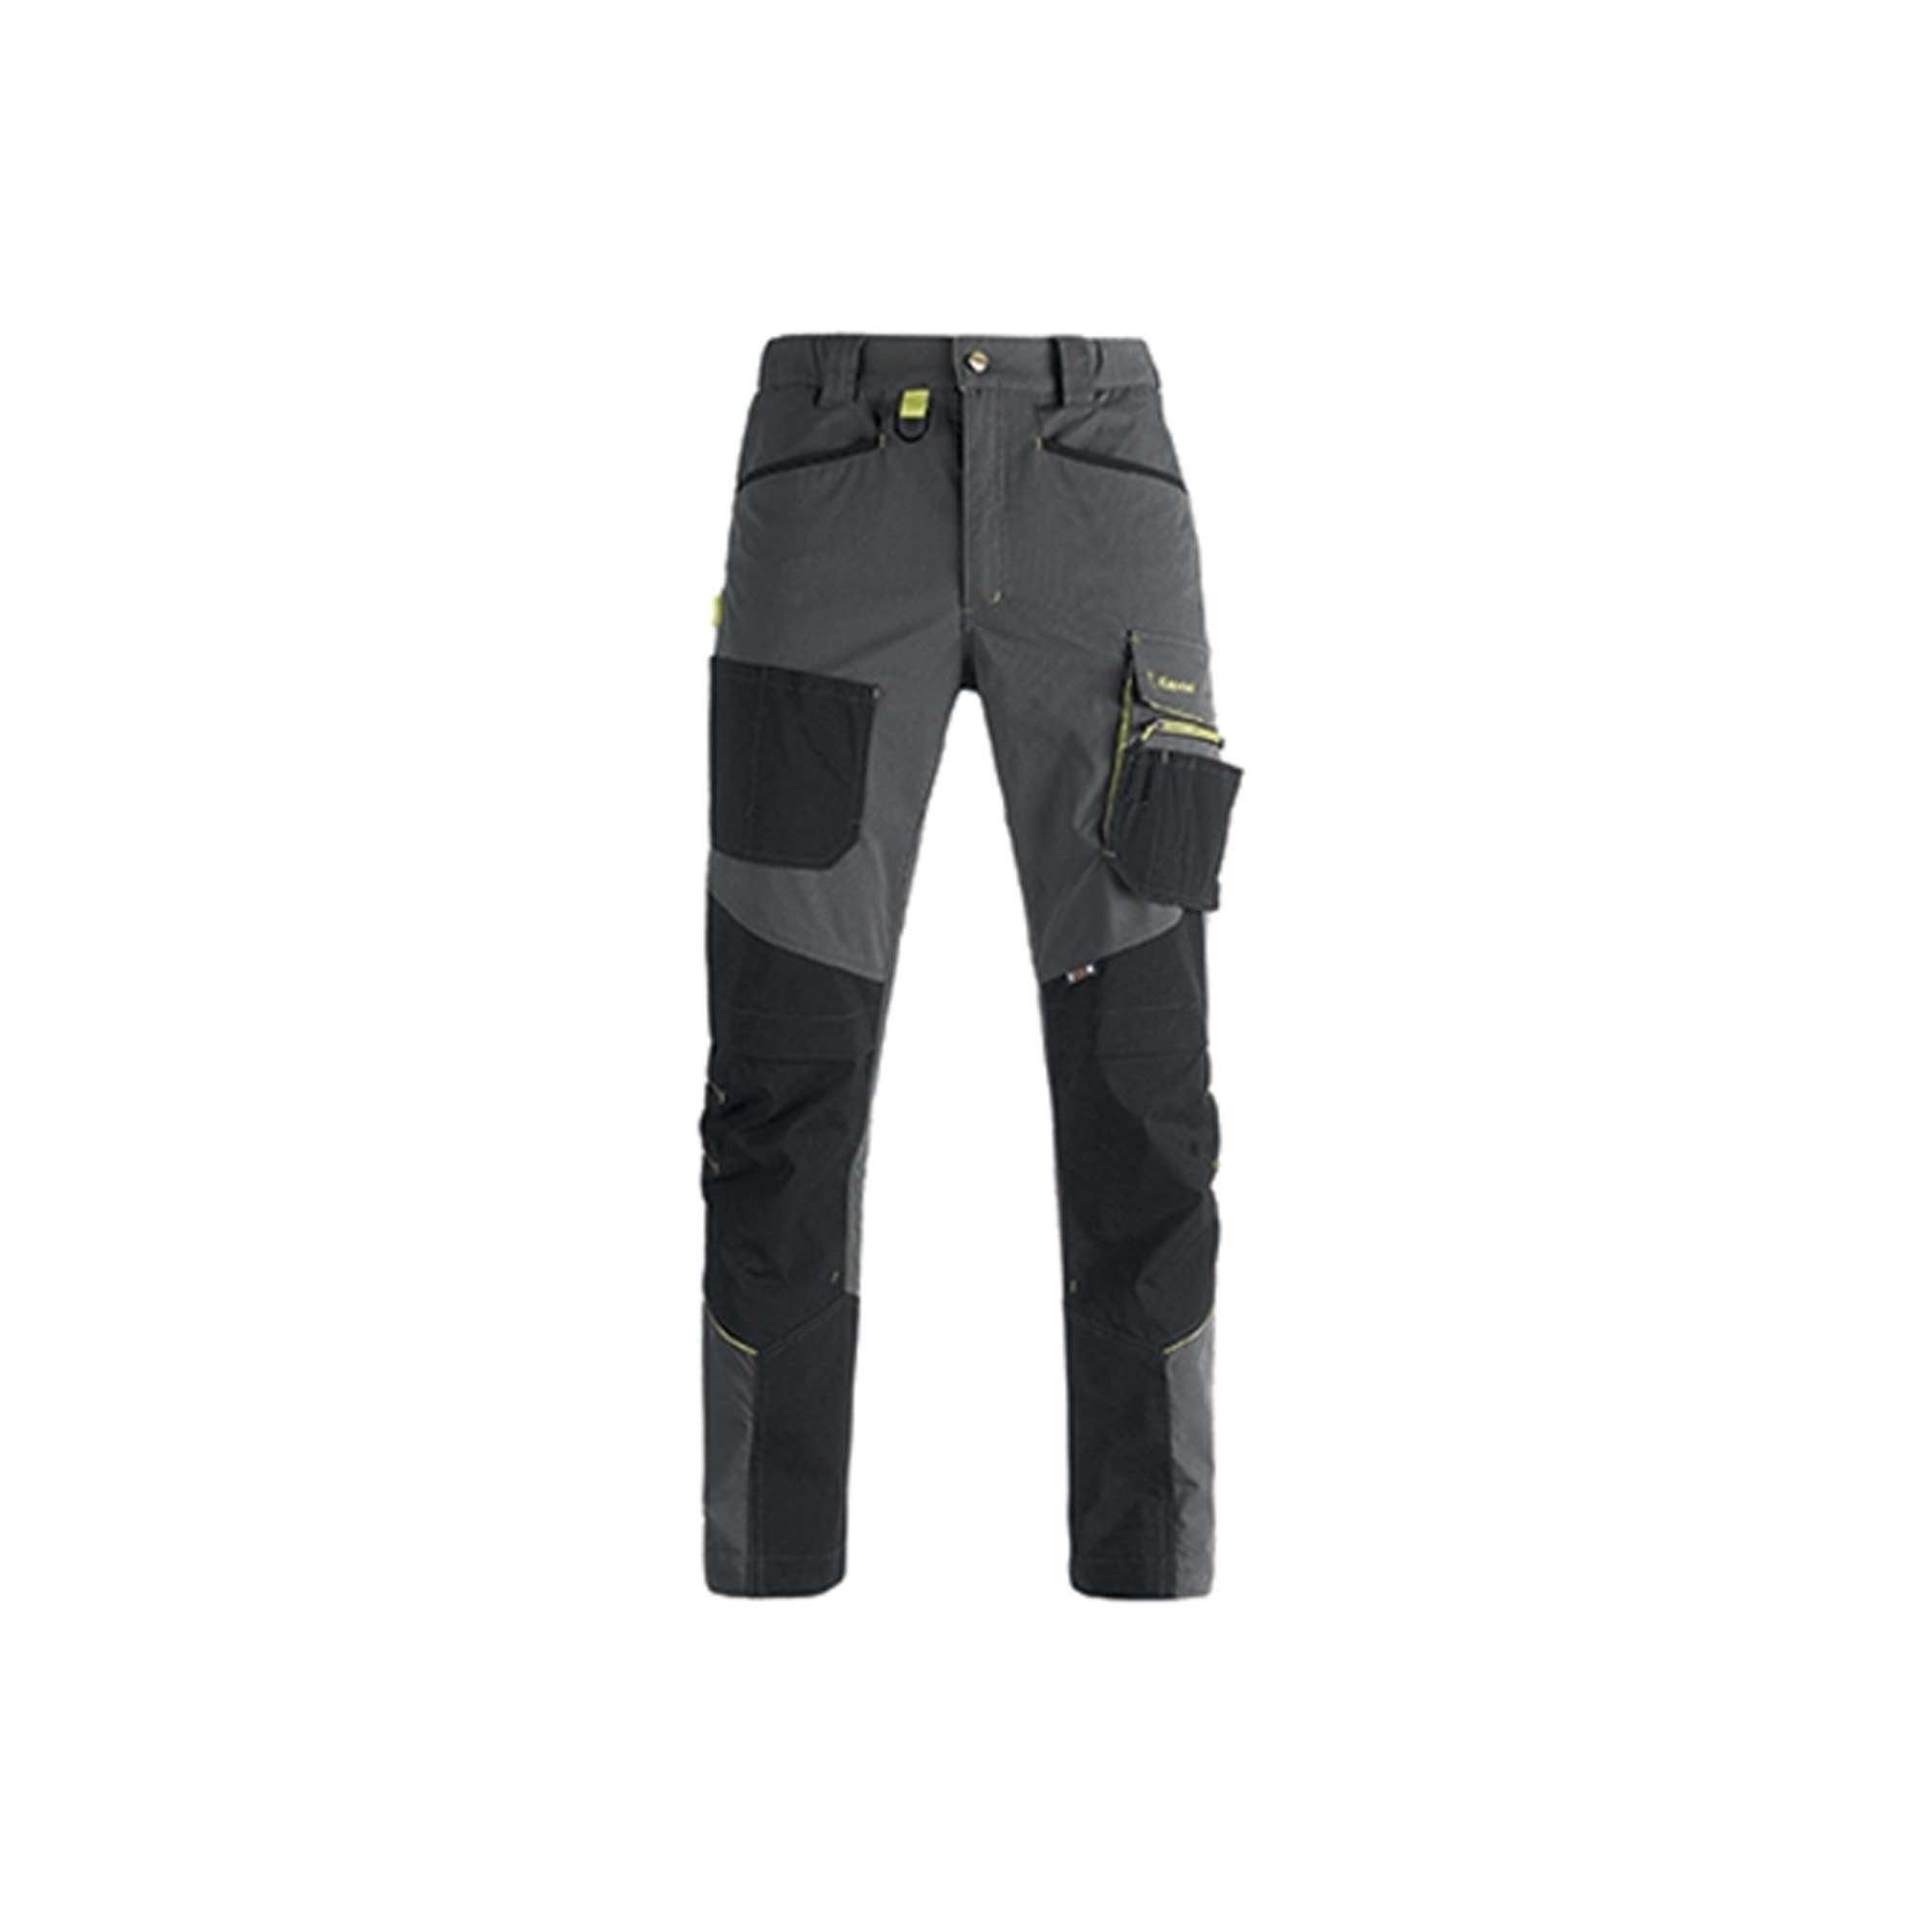 Work Pants, Tiler, Gray/ Black Size XL - DYNAMIC 36553 Kapriol